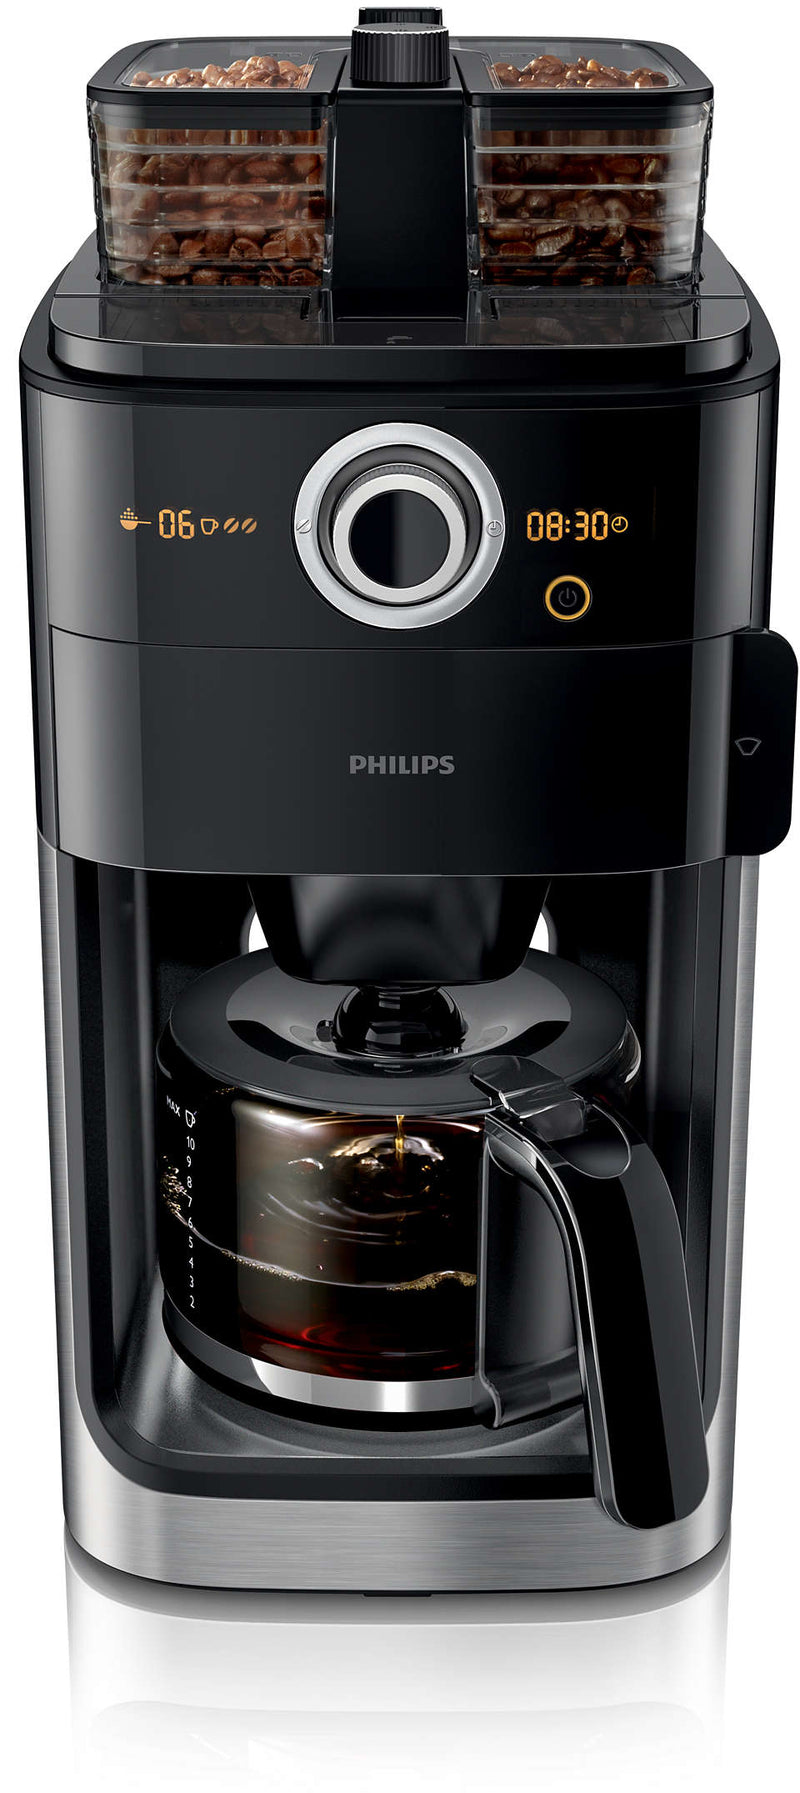 Philips HD7769 Öğütücülü Filtre Kahve Makinesi